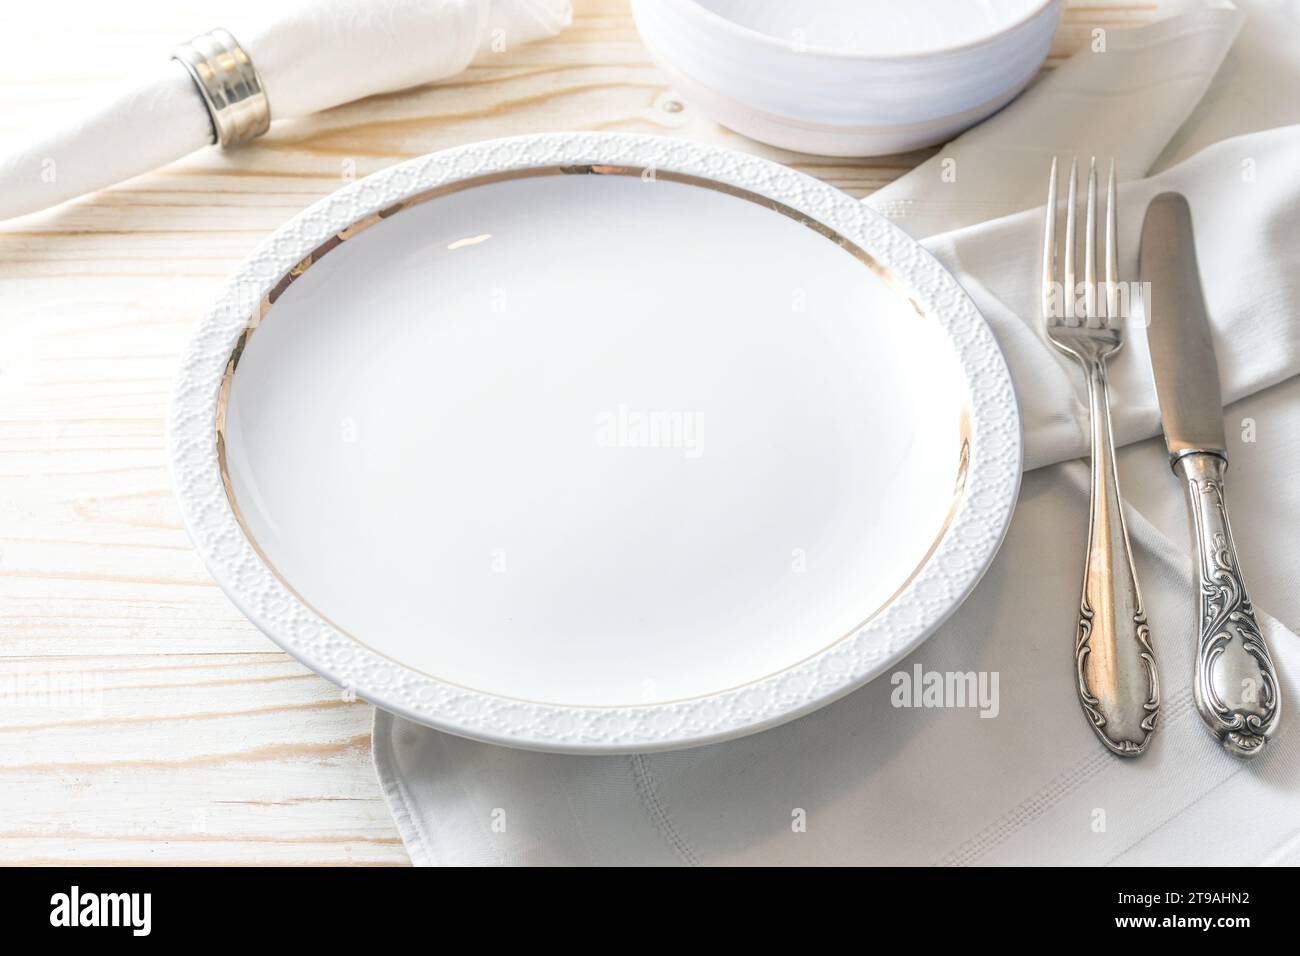 Préparation pour un cadre de lieu avec une assiette blanche, serviette et couverts en argent nostalgique sur une table en bois de couleur claire pour le dîner de fête, co Banque D'Images